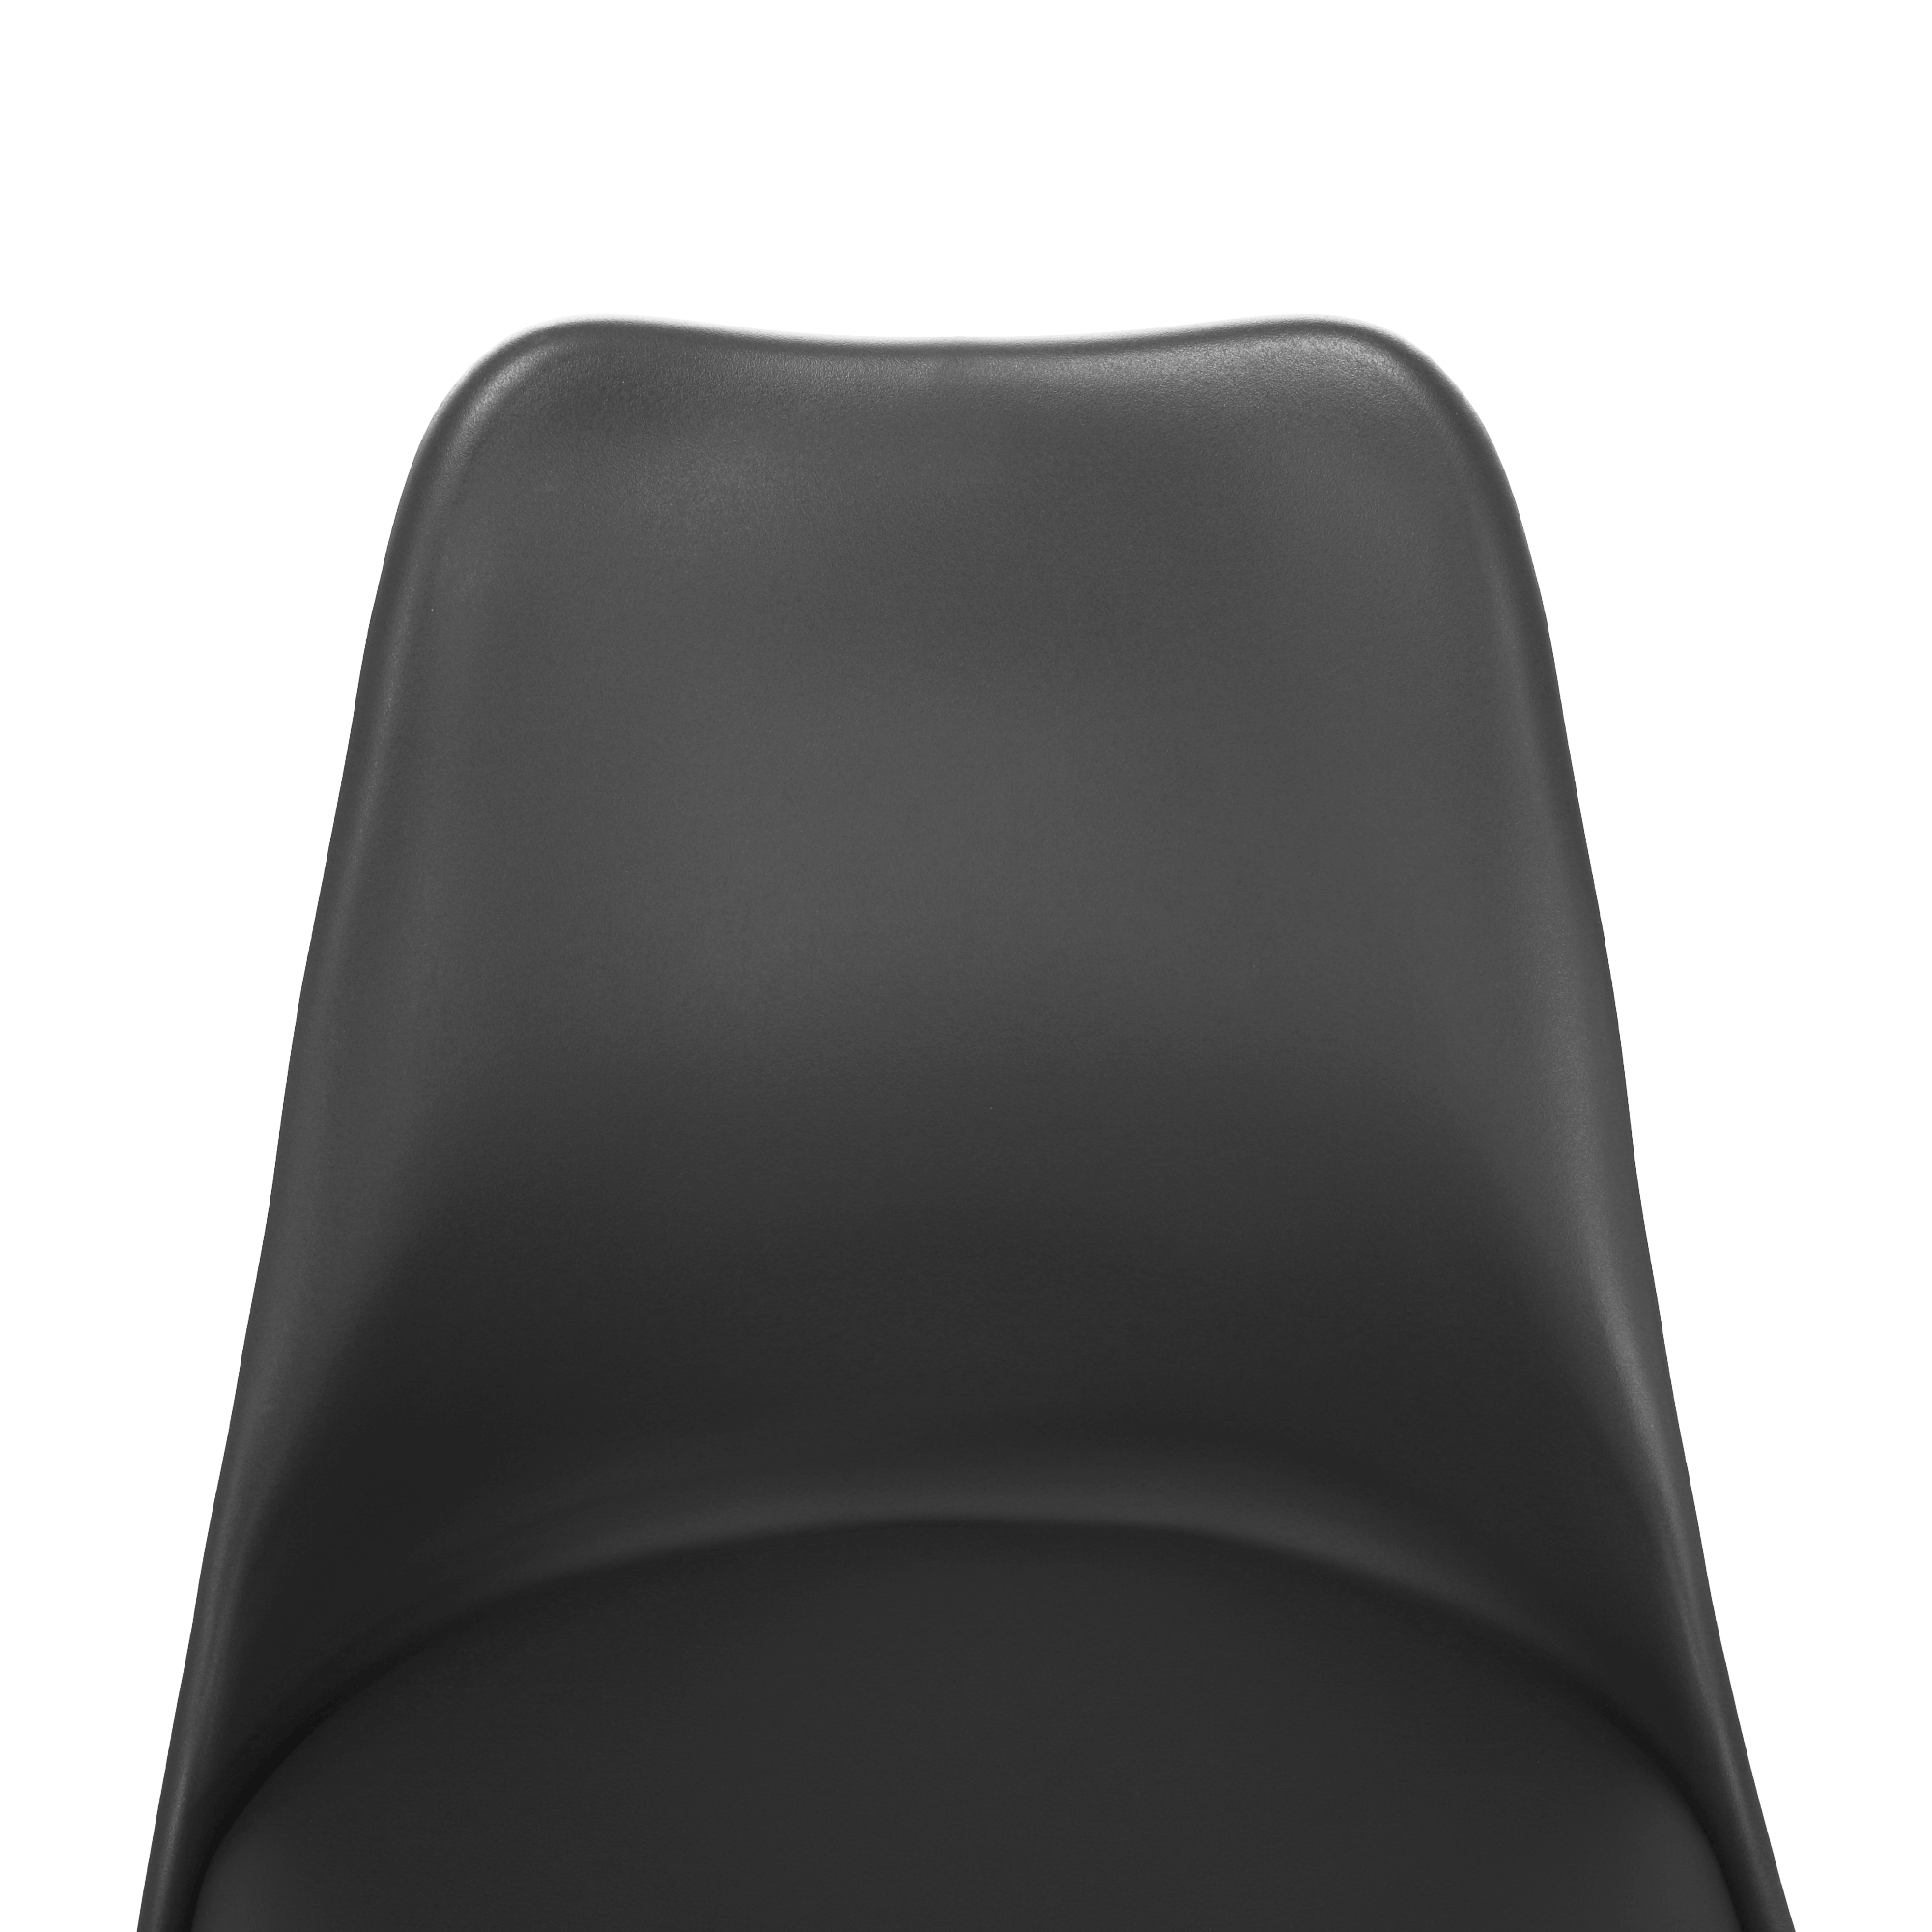 Stylová otočná židle, tmavě šedá , ETOSA